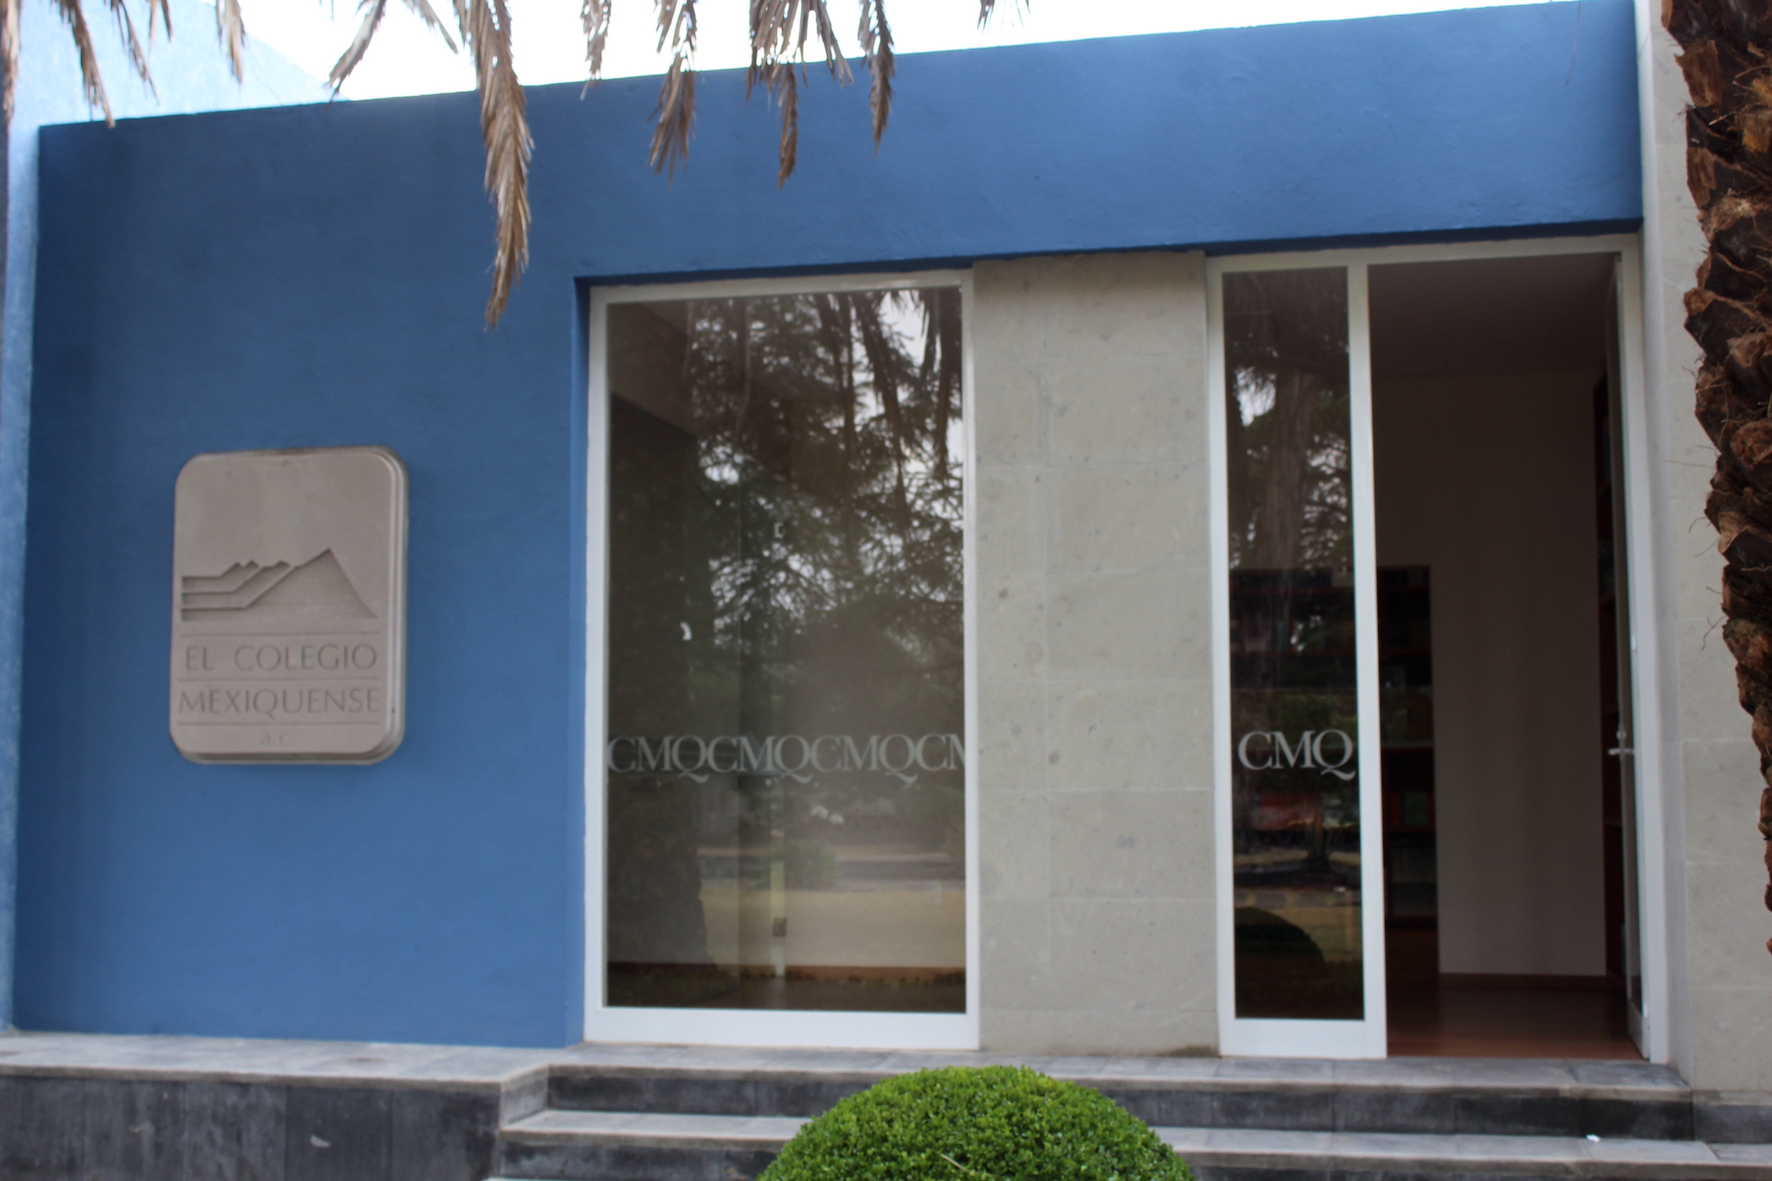 Siguen abiertas las convocatorias a los tres programas de posgrado que ofrece El Colegio Mexiquense